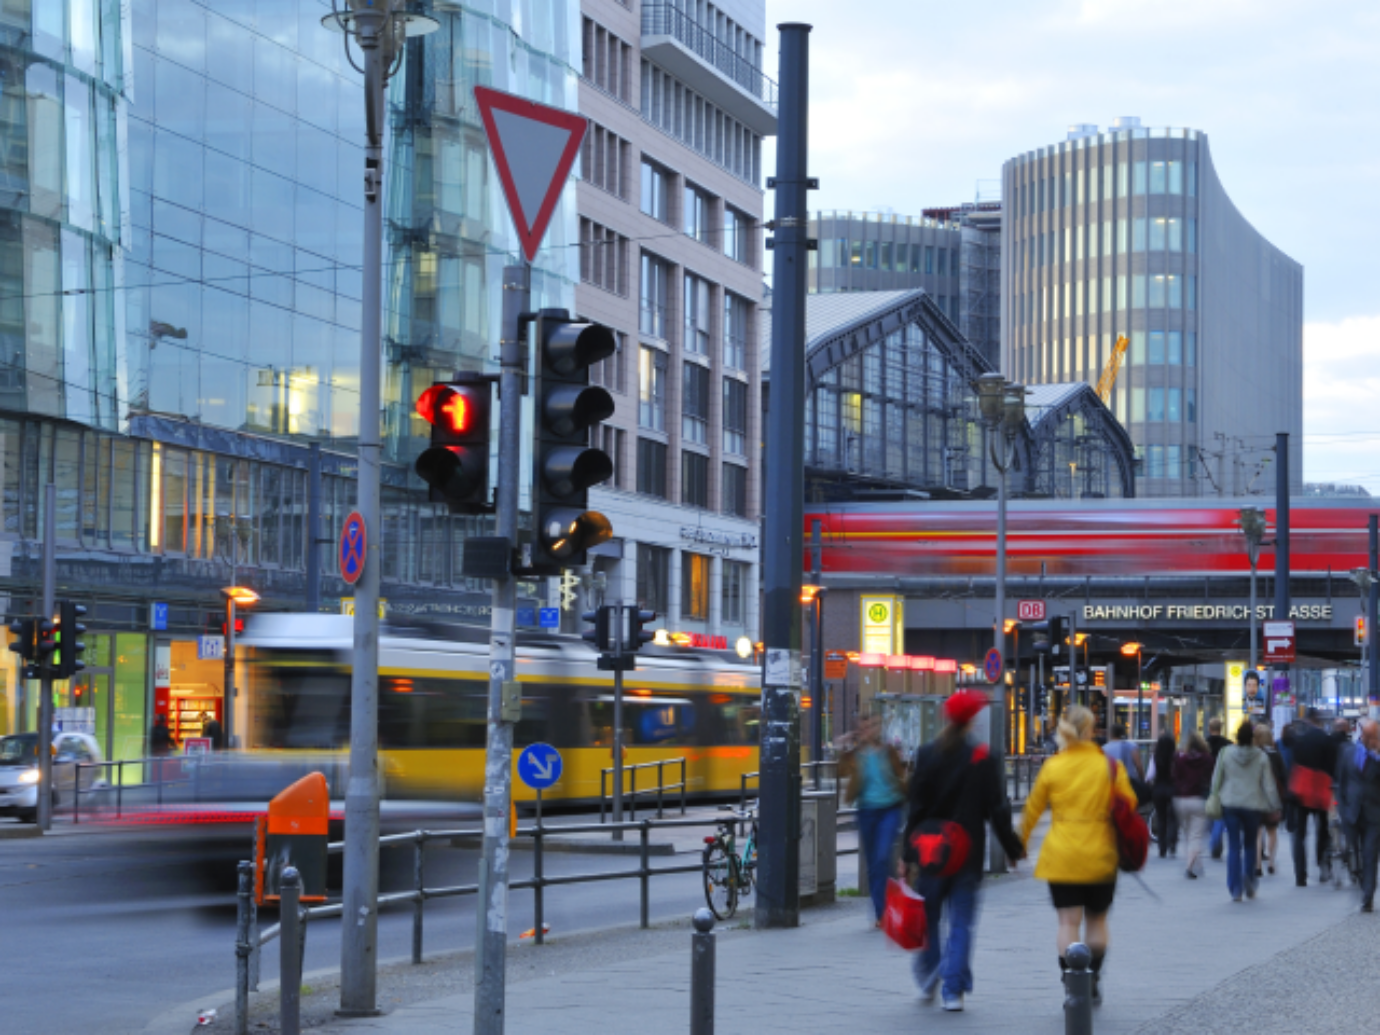 Das Bild zeigt die Friedrichstraße in Berlin. Als Promoter arbeitest du in solchen beliebten Fußgängerzonen.